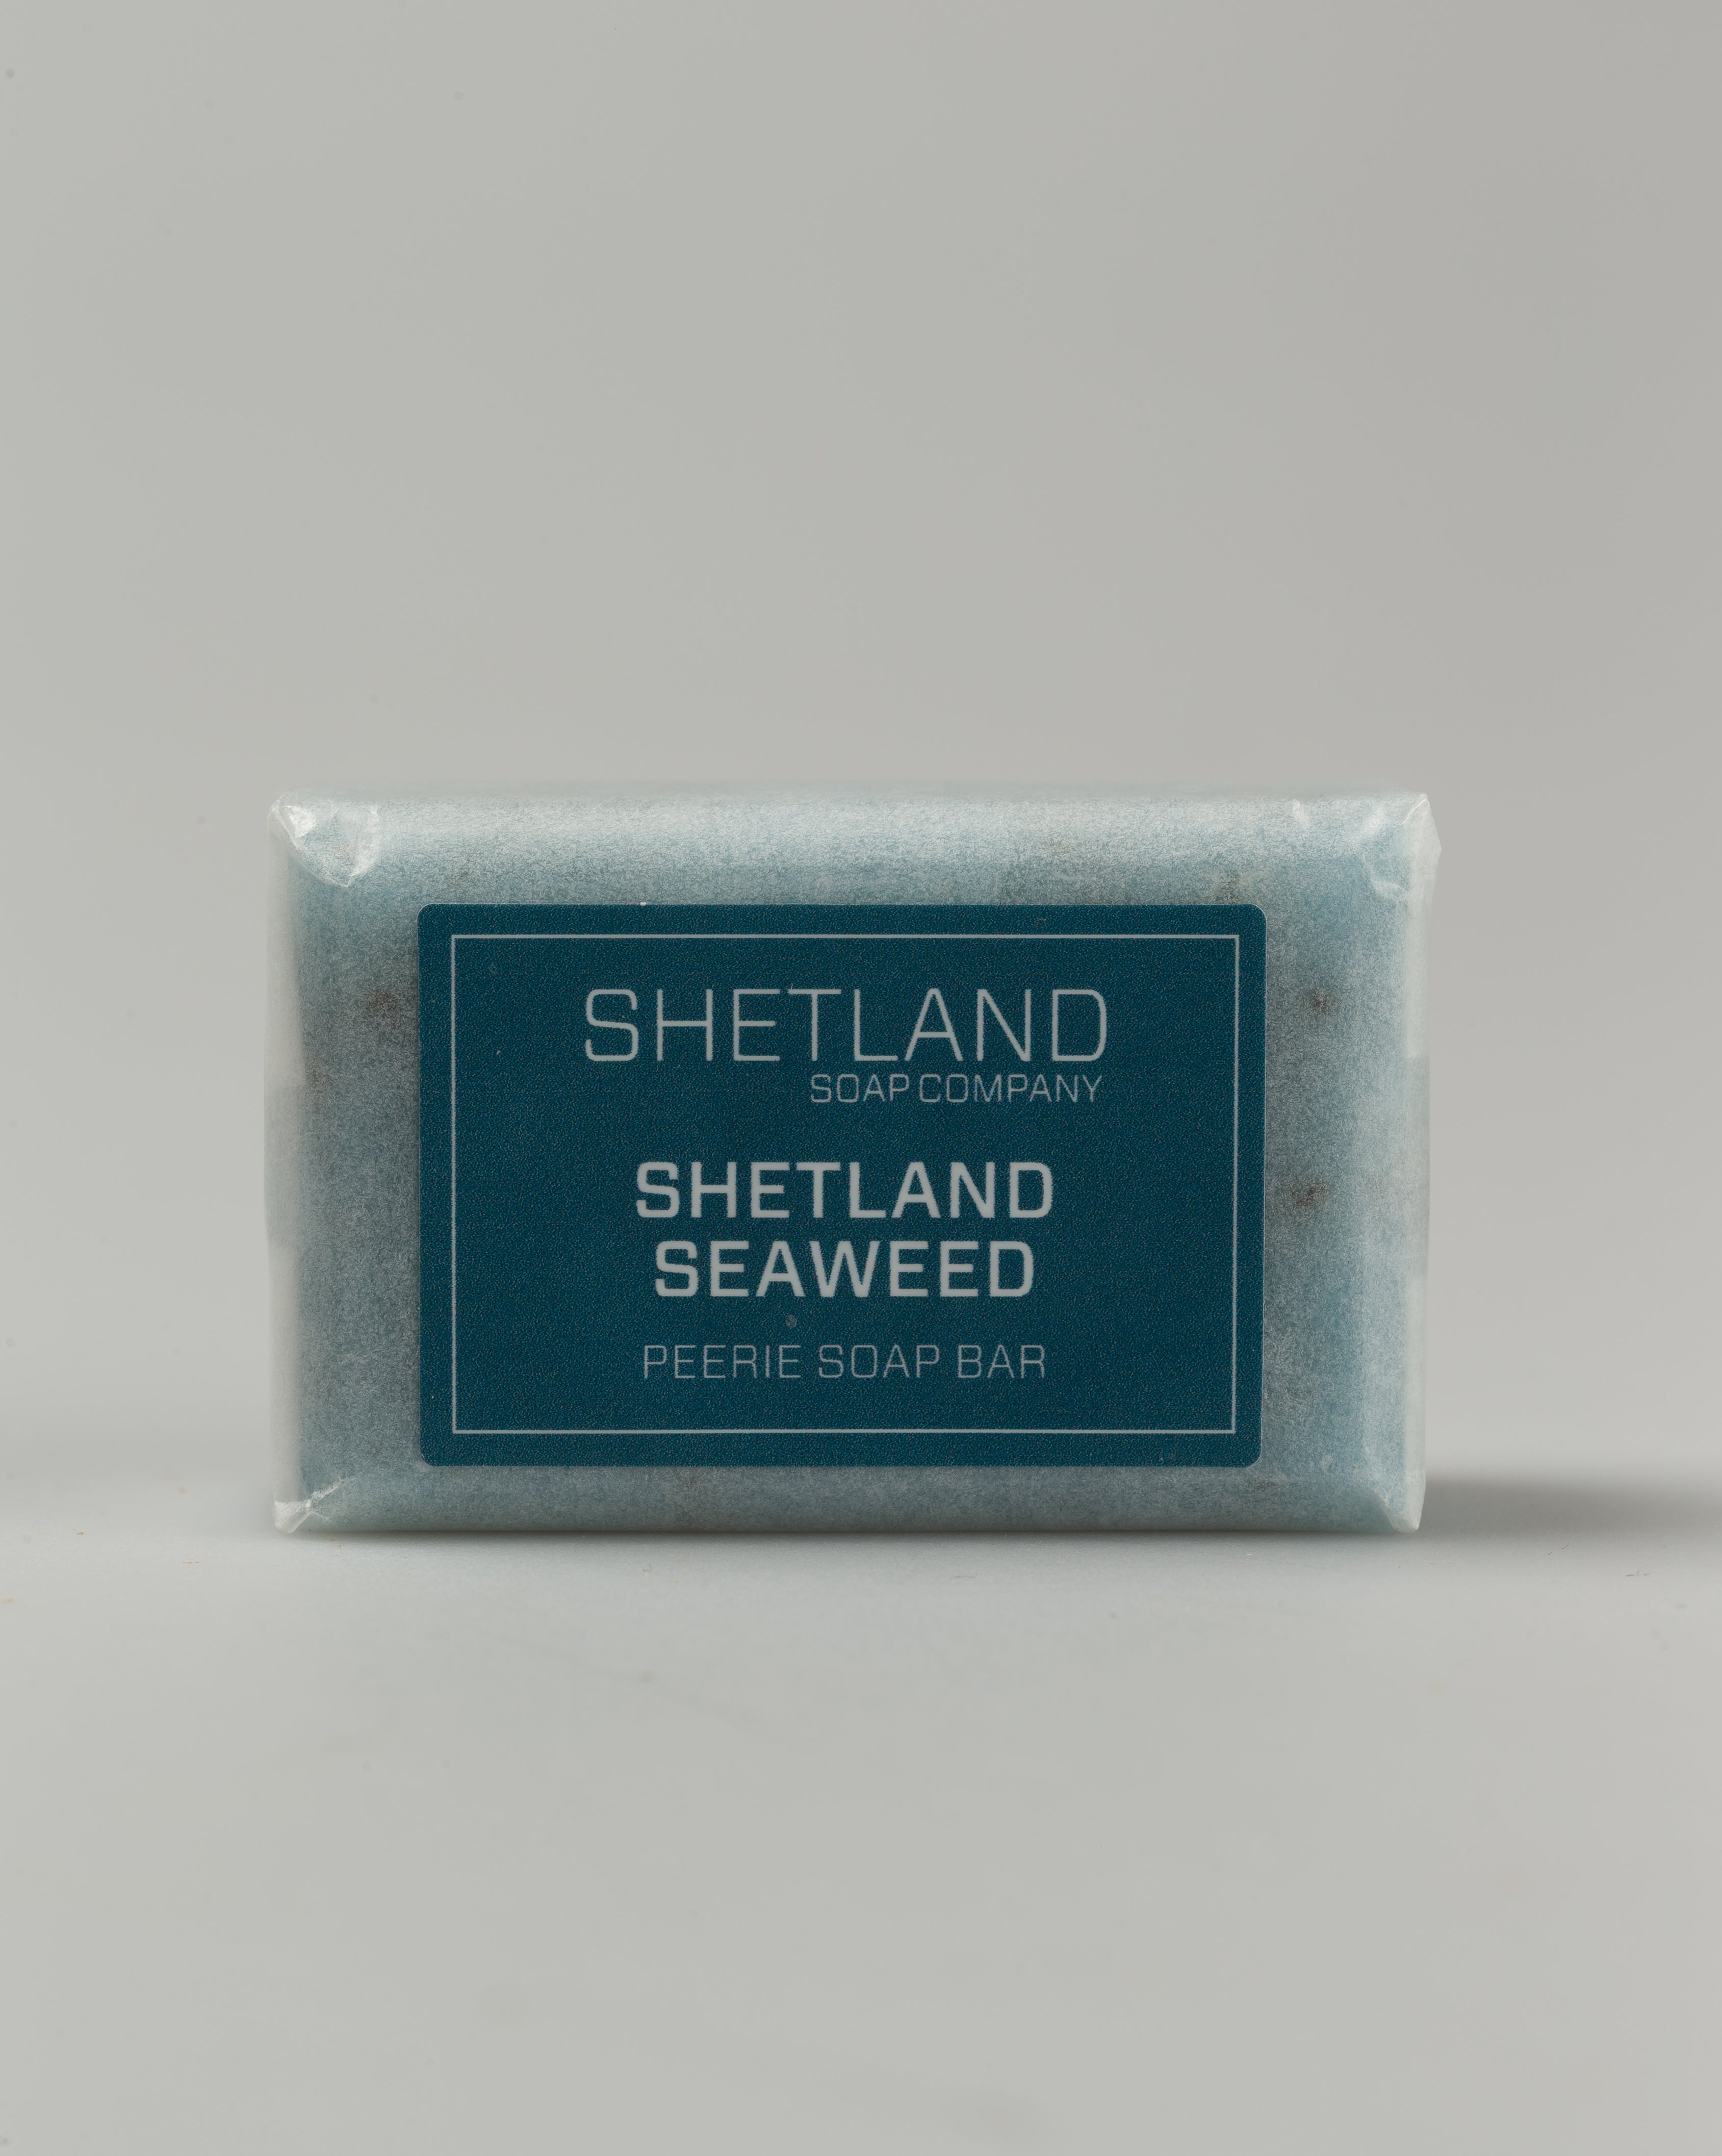 SHETLAND SEAWEED PEERIE SOAP BAR